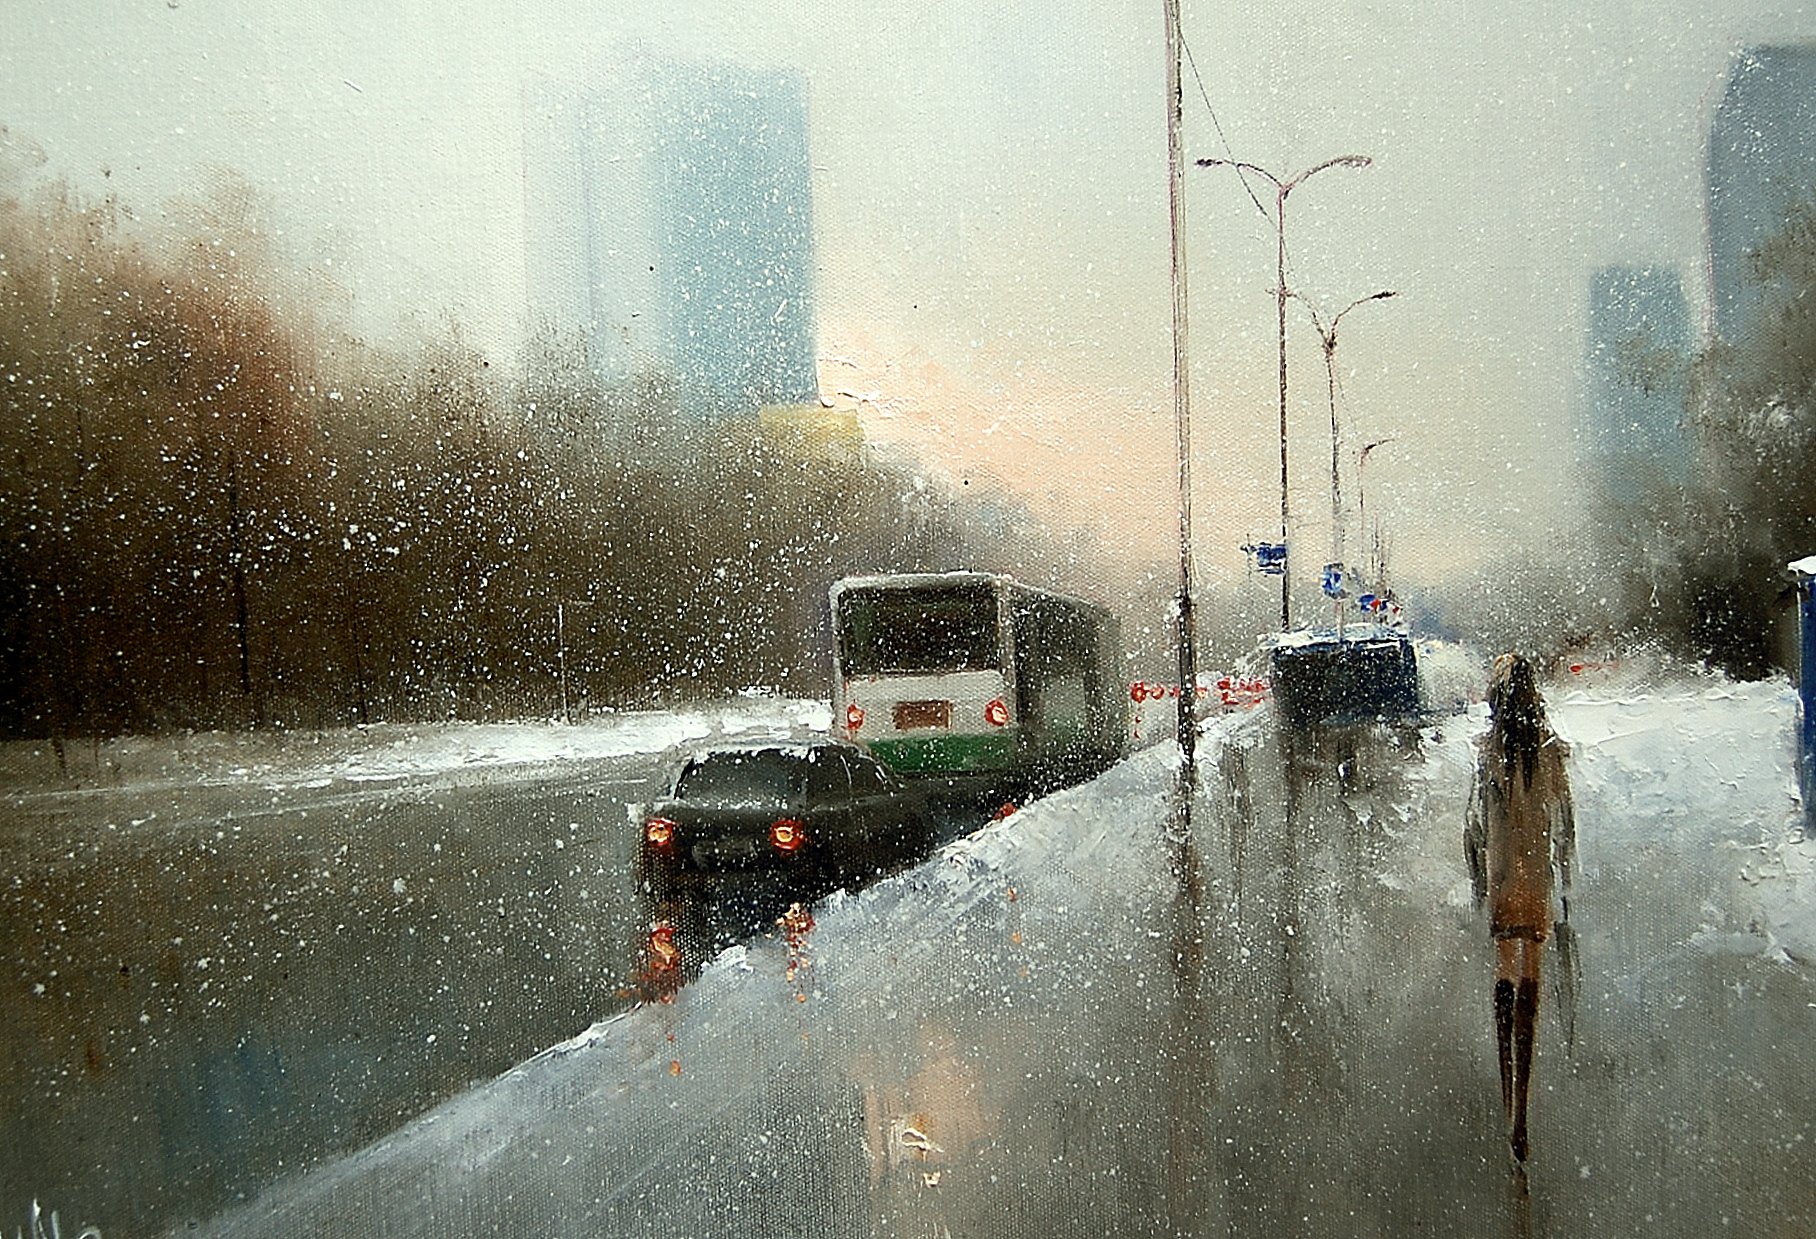 Сугробов дождь. Художник дождя Джефф Роуланд. Первый снег в городе. Дождь зимой. Снегопад в городе.